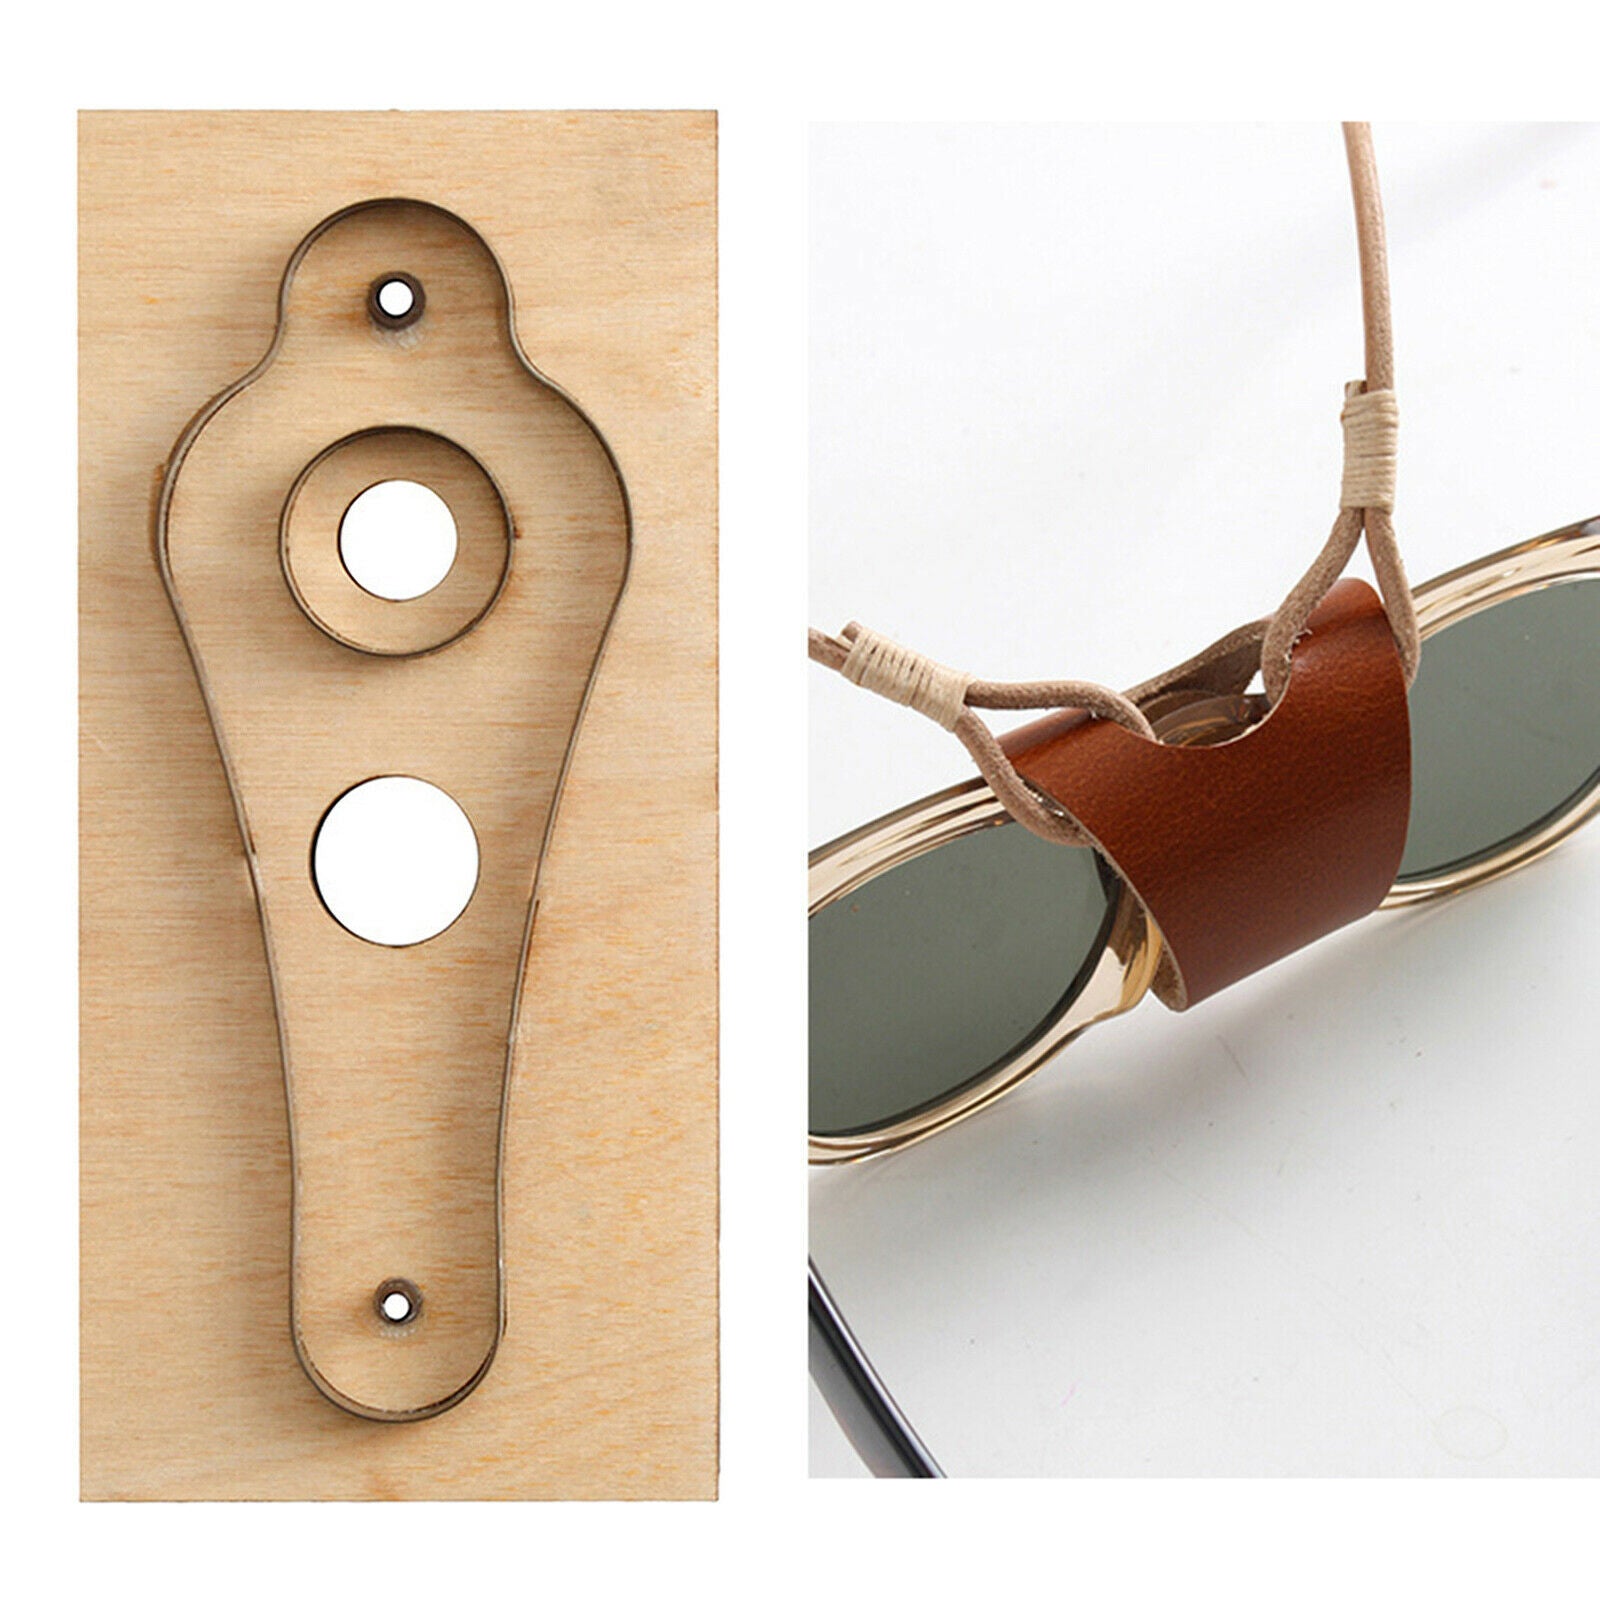 Leather Craft Dies Eyewear Lanyard Cut Mold Glasses Holder Making Blade Tool